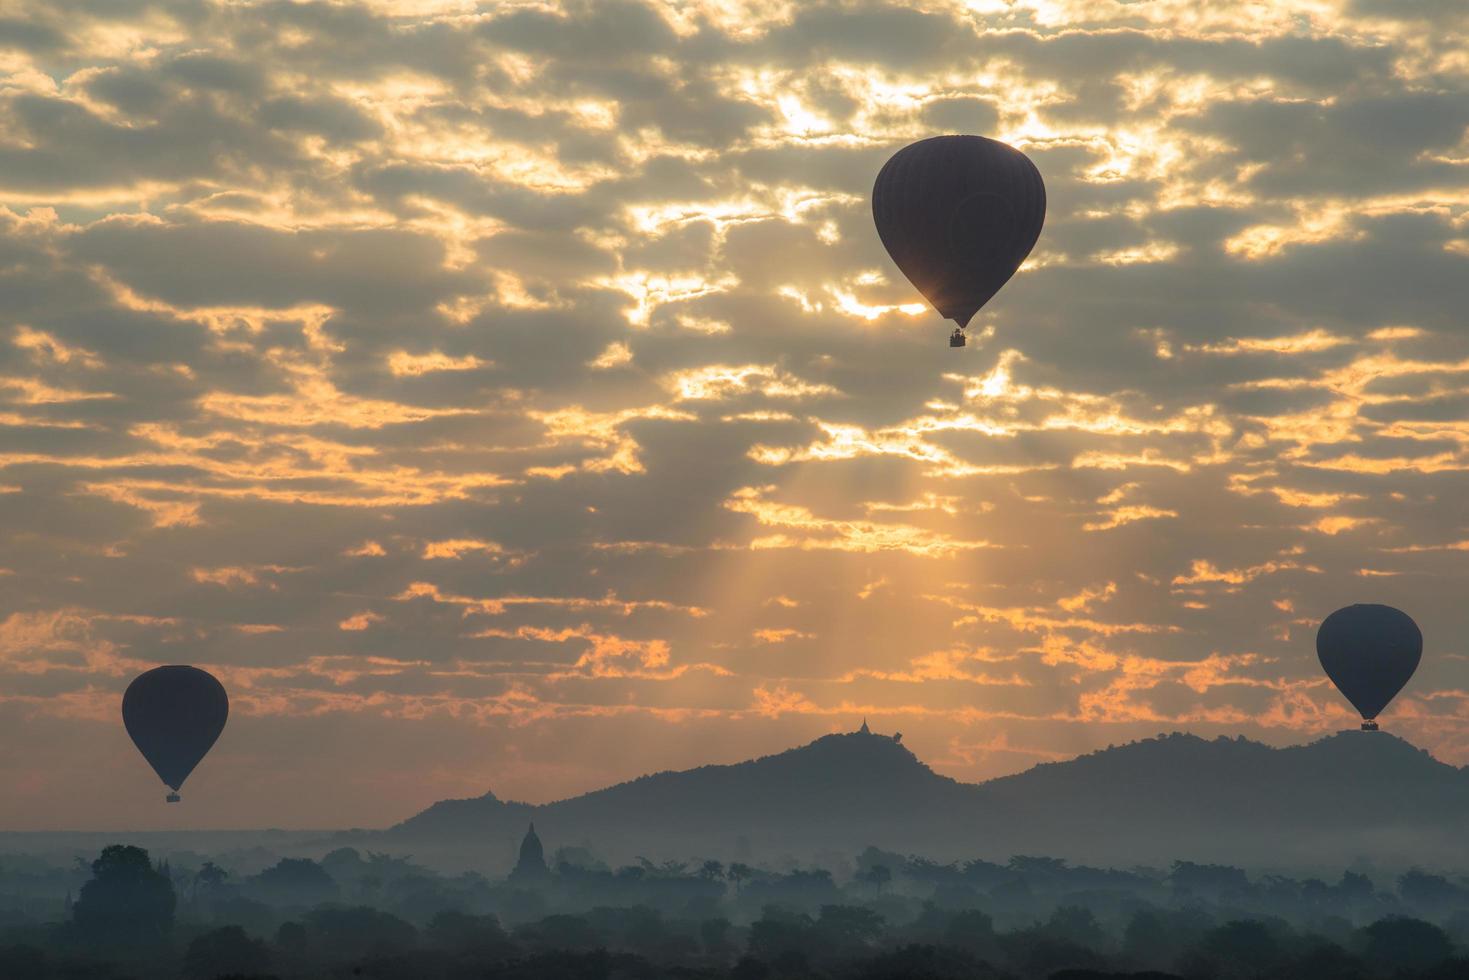 globos aerostáticos volando sobre las llanuras de bagan durante el amanecer en la zona arqueológica de bagan, región de mandalay de myanmar. foto